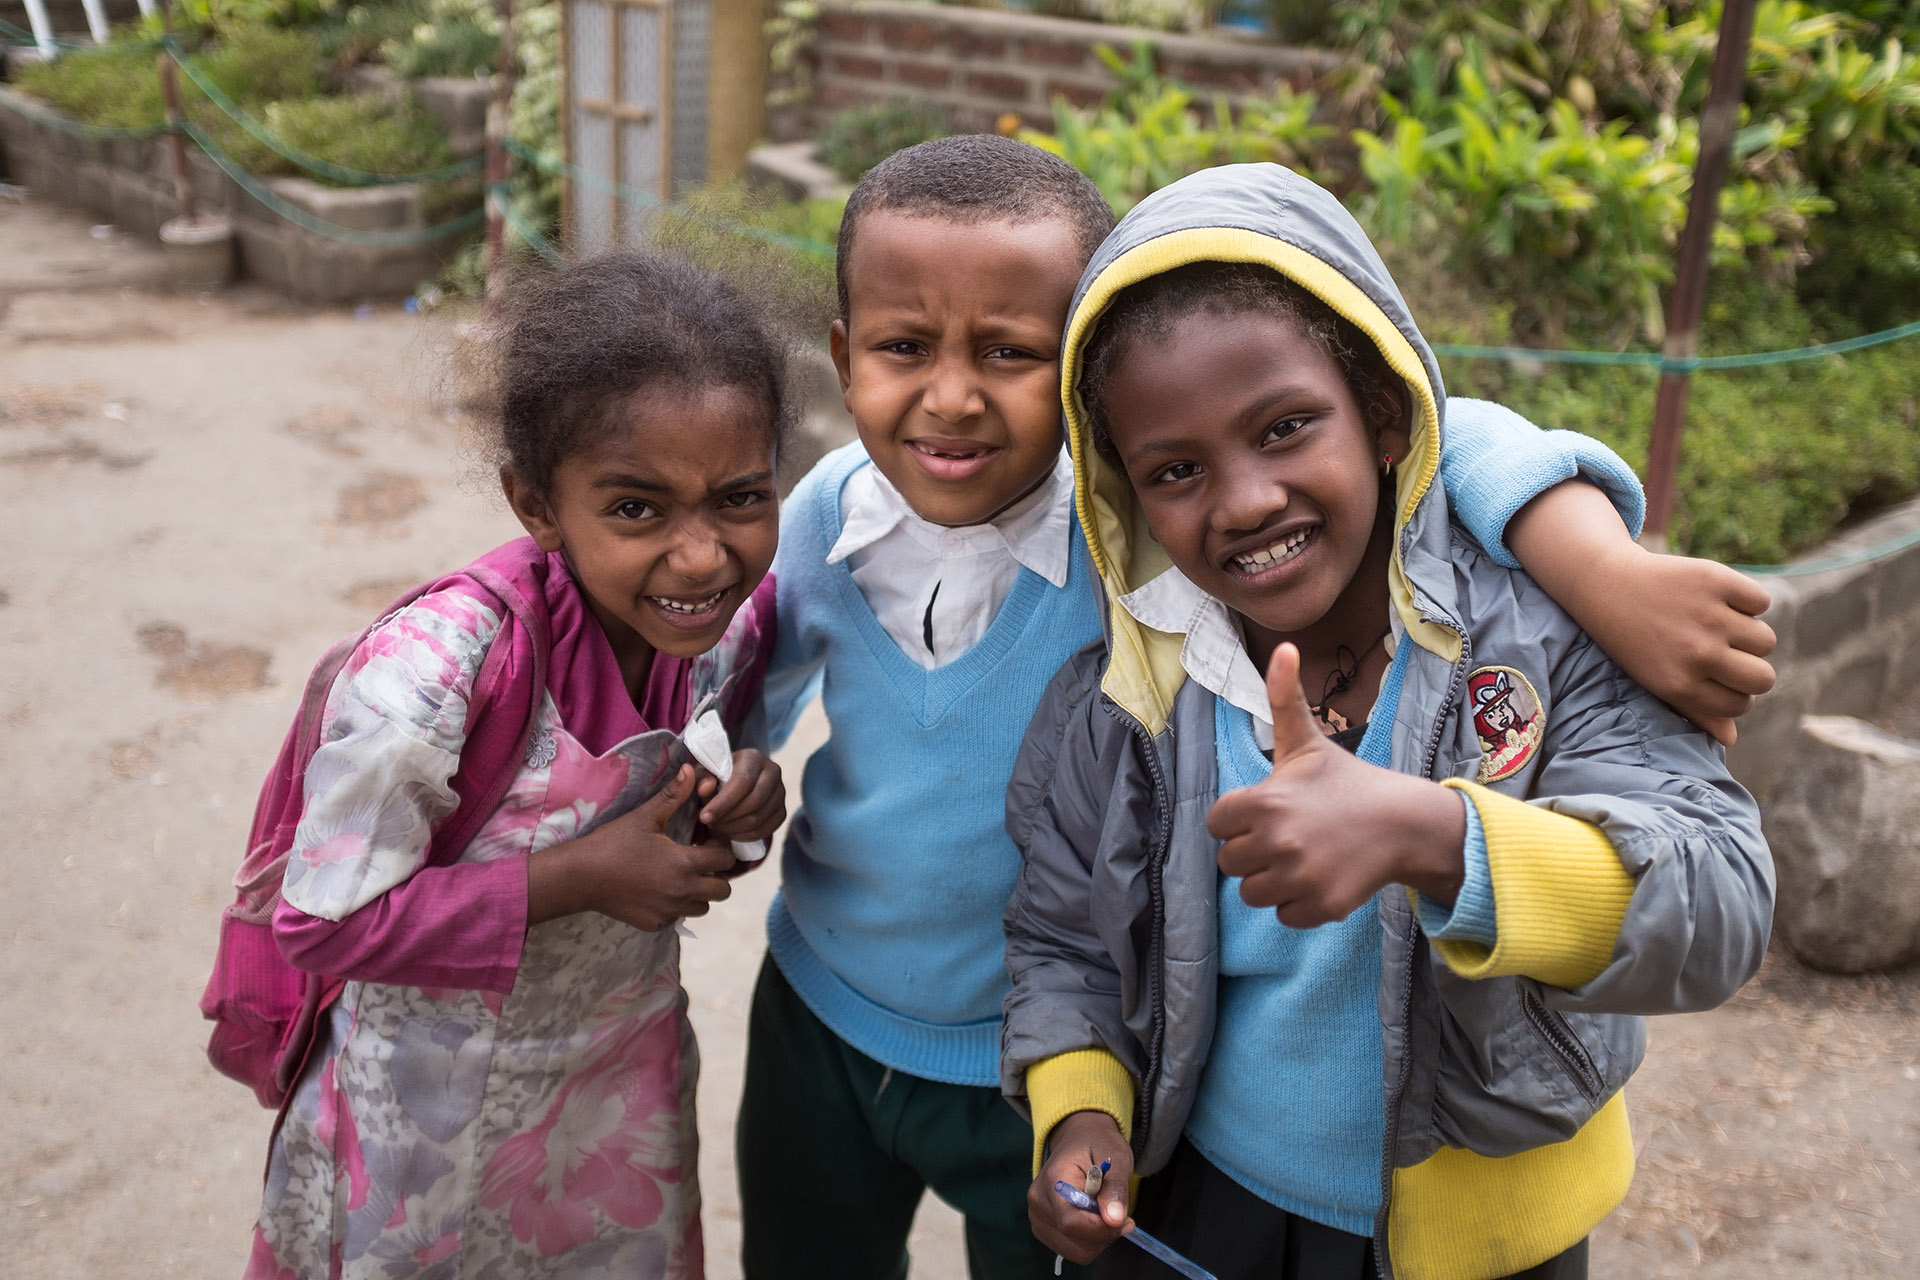 Skärholmens församlings fadderbarnsprojekt sker i samarbete med Mekane Yesus i Addis Abeba. 